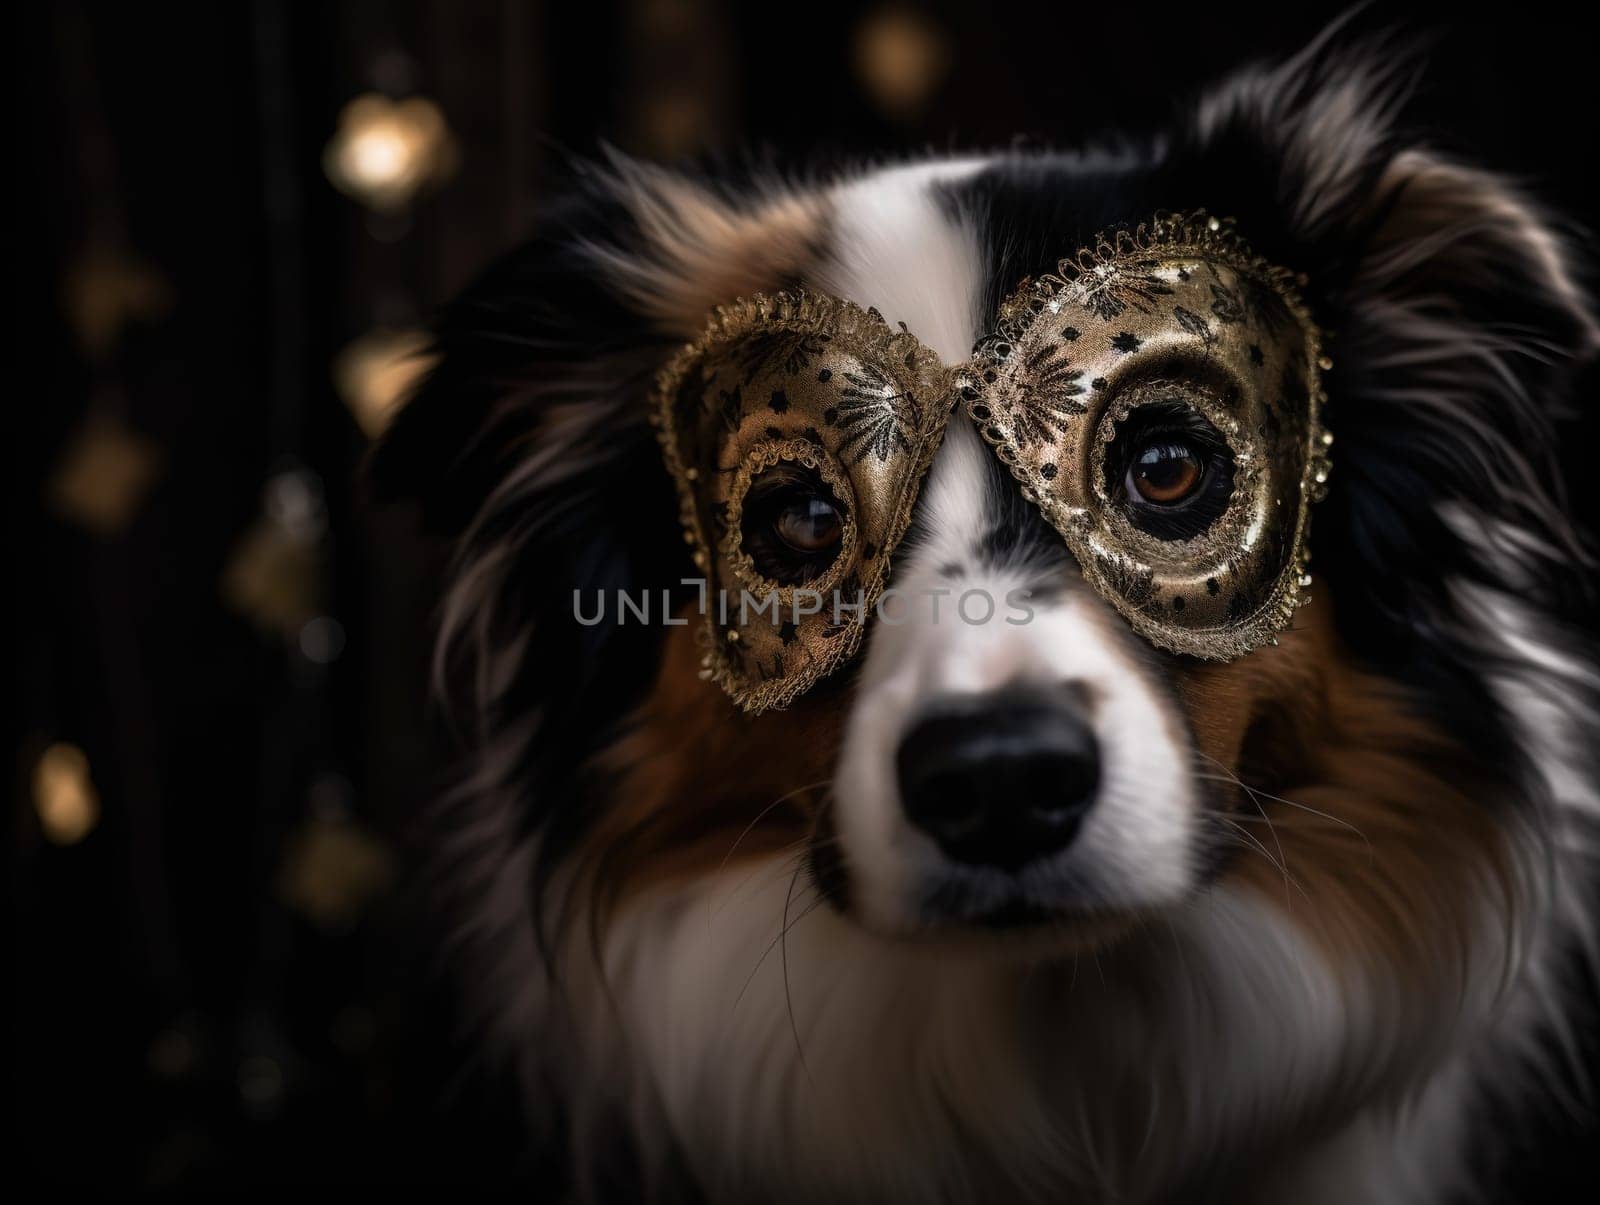 Dog In Carnival Mask by GekaSkr